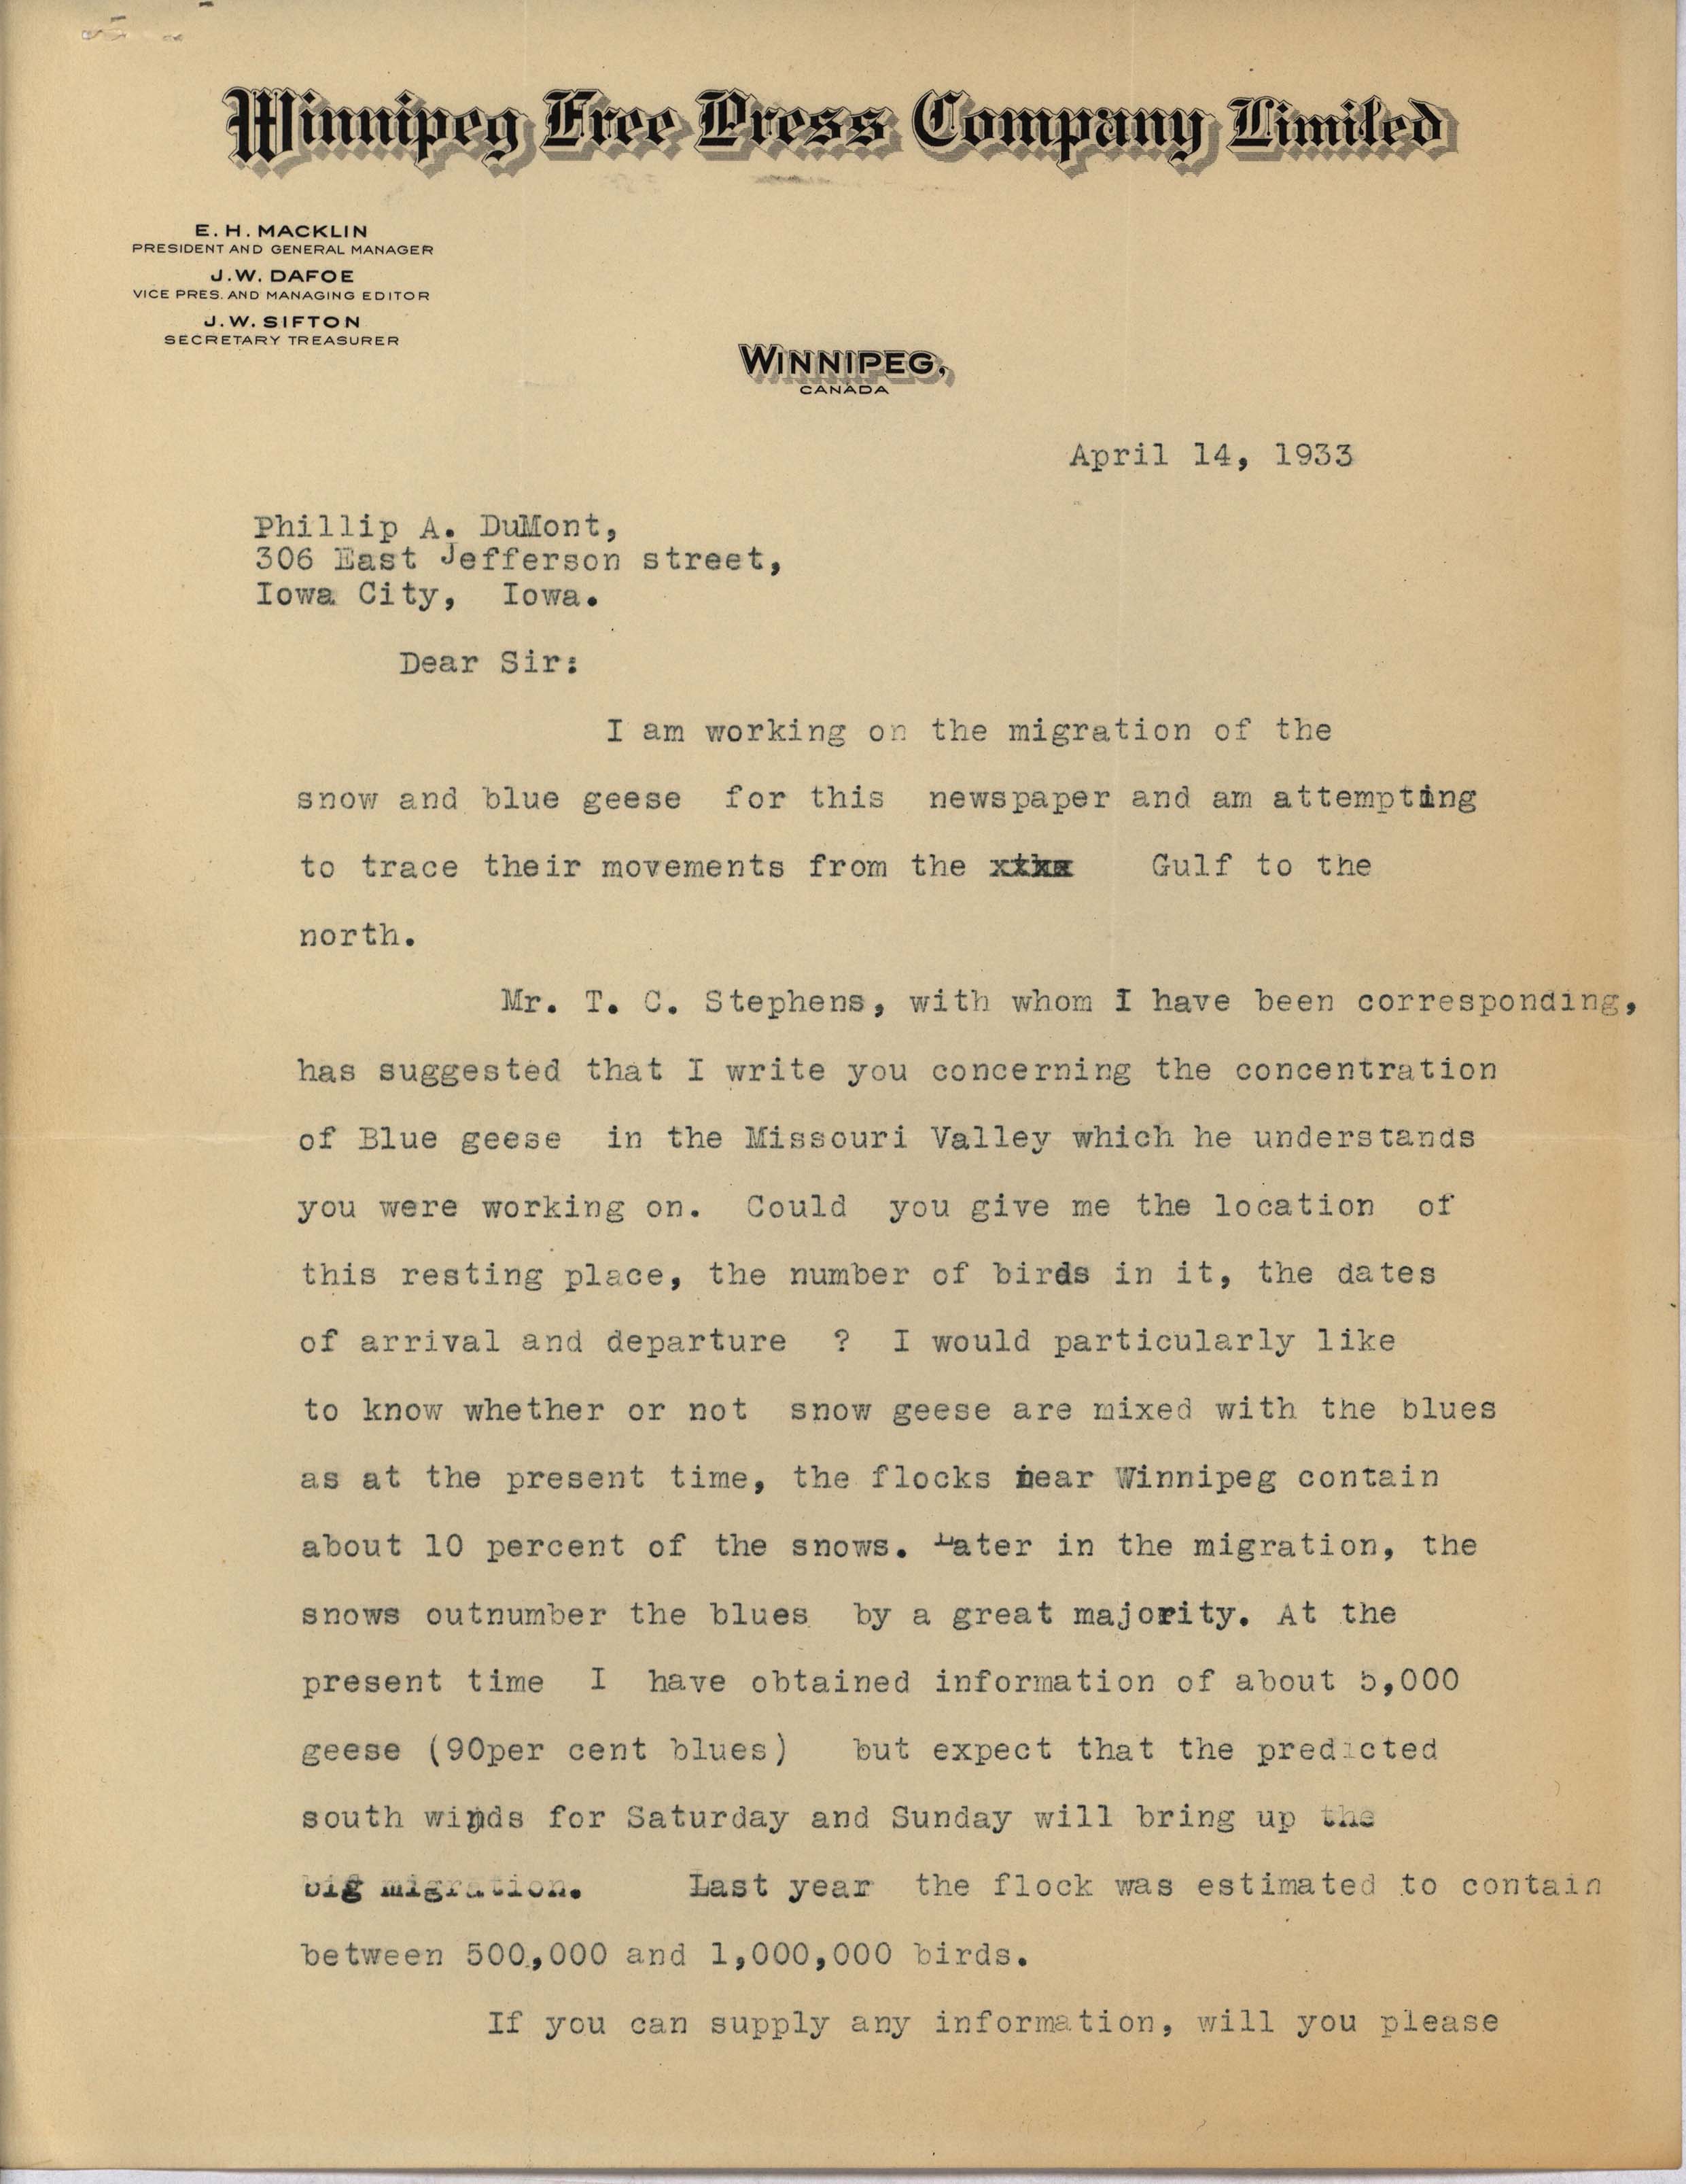 Burt Gresham letter to Philip DuMont regarding Goose migration, April 14, 1933